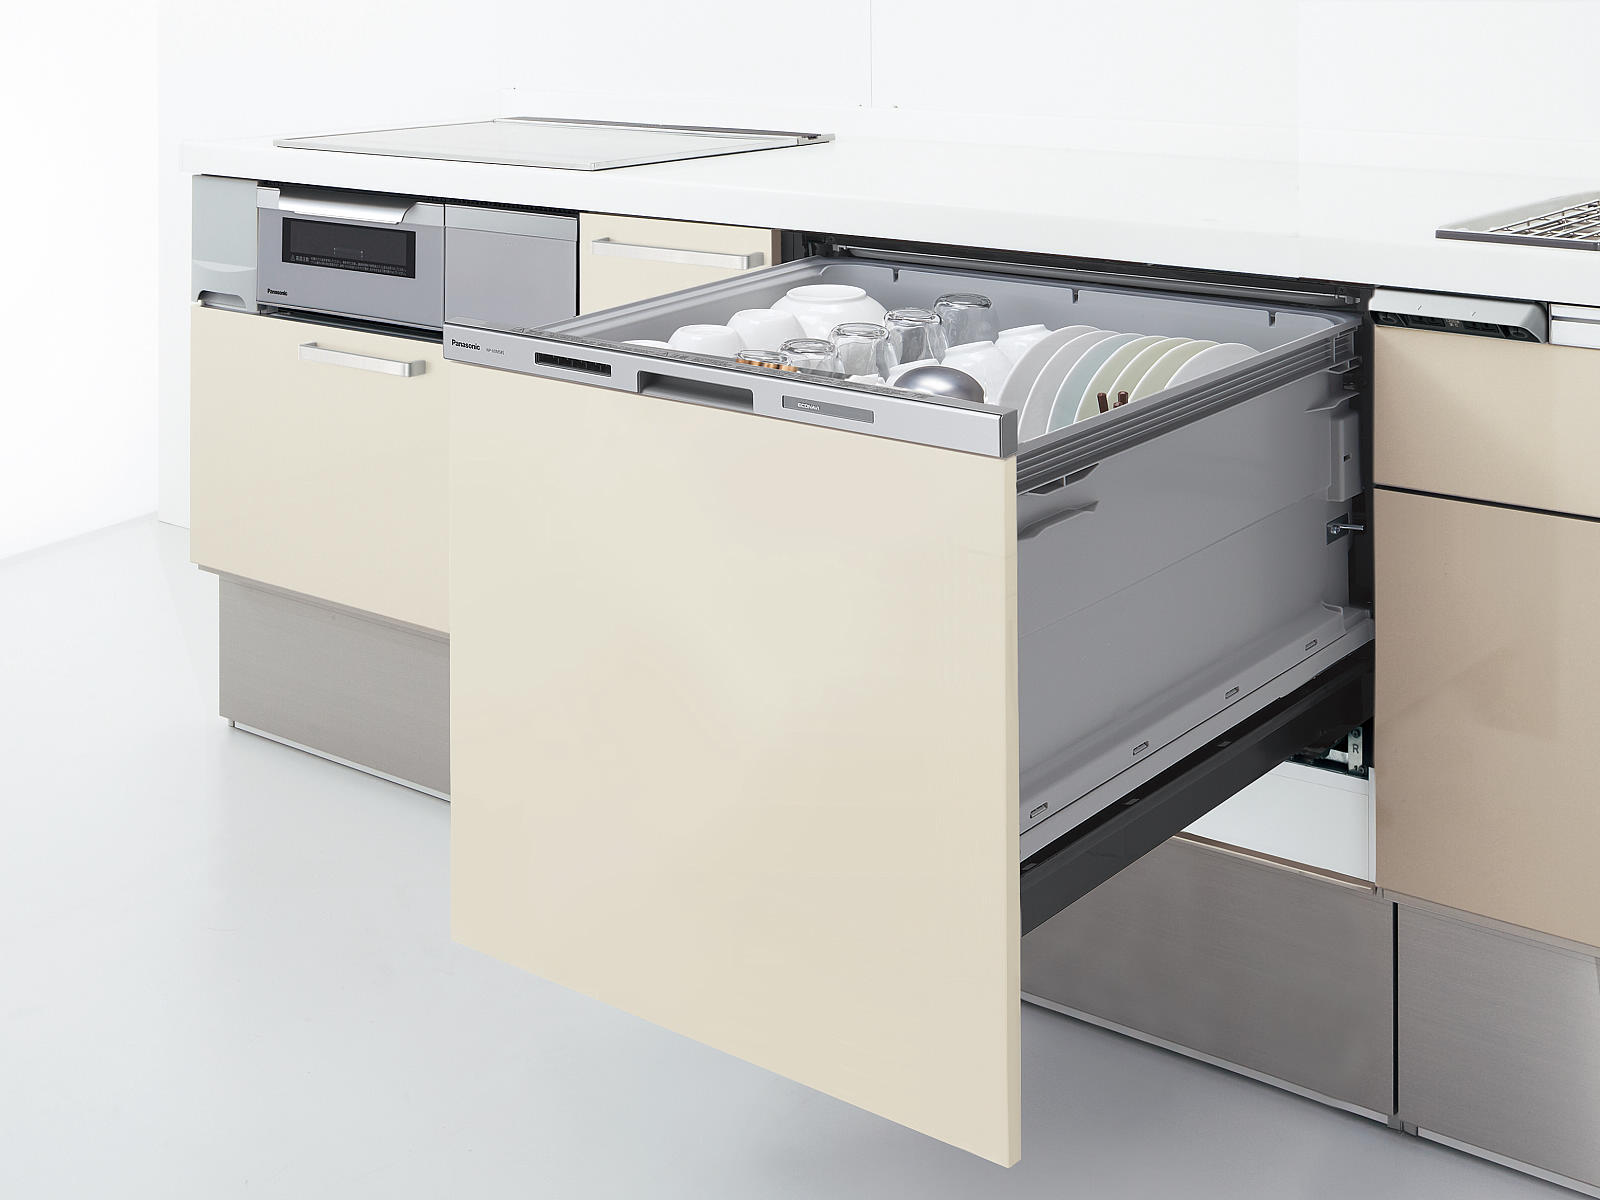 ビルトイン式電気食器洗機（ビルトイン食器洗い乾燥機）「S60MS8W2」